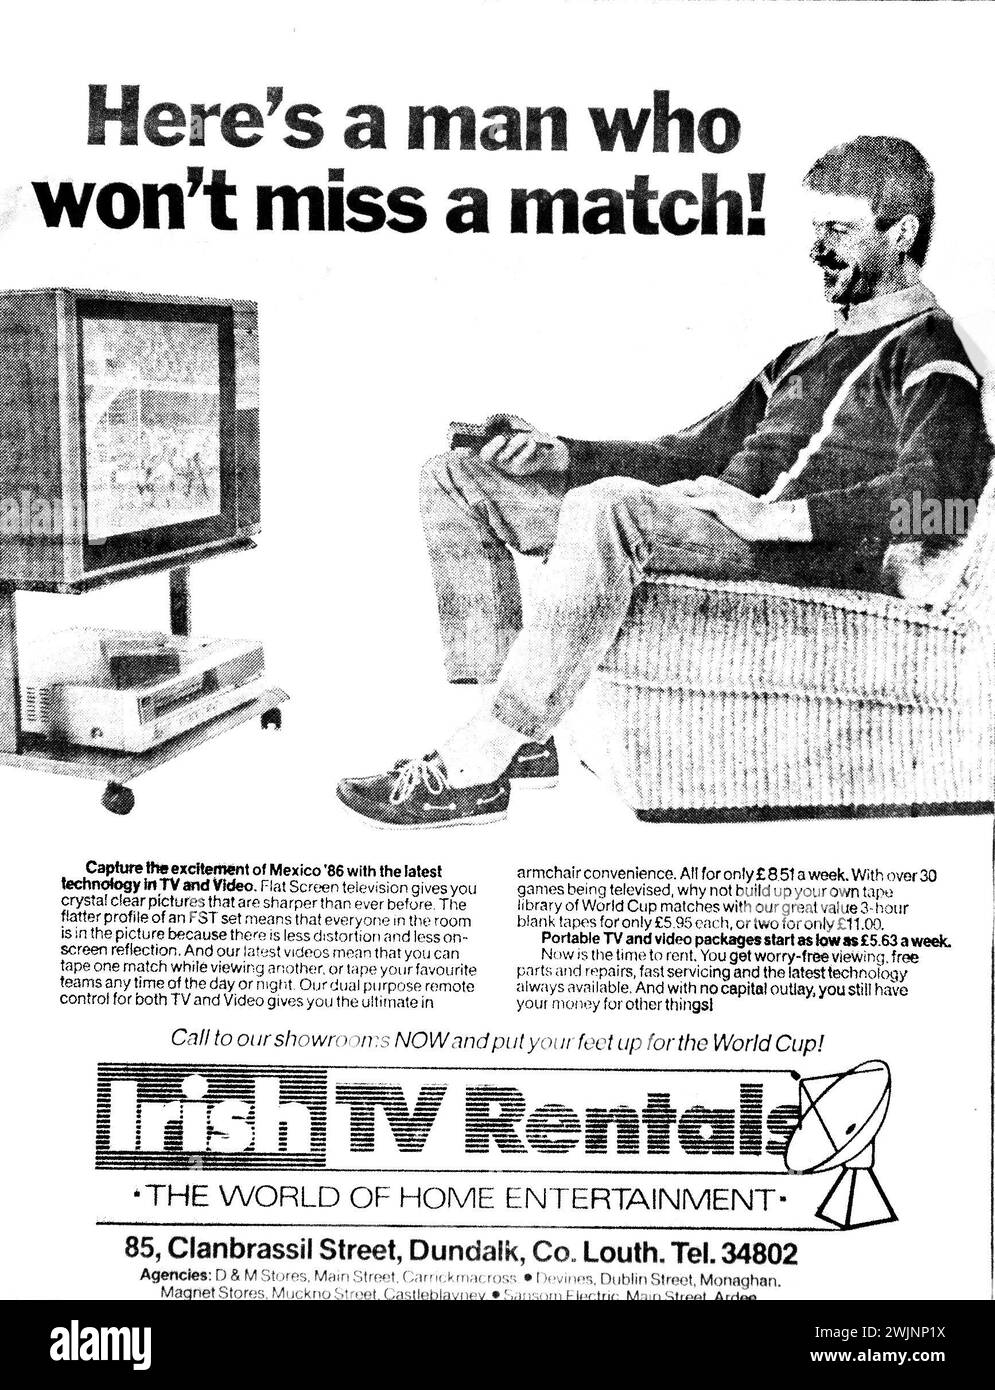 Un annuncio del 1986 per Irish TV Rentals, Dundalk, Irlanda. Le immagini catturano un'epoca in cui le persone noleggiavano la televisione e il videoregistratore su base settimanale/mensile.l'annuncio è stato lanciato per incoraggiare le persone a noleggiare per le prossime finali dei Mondiali di calcio in Messico. Foto Stock